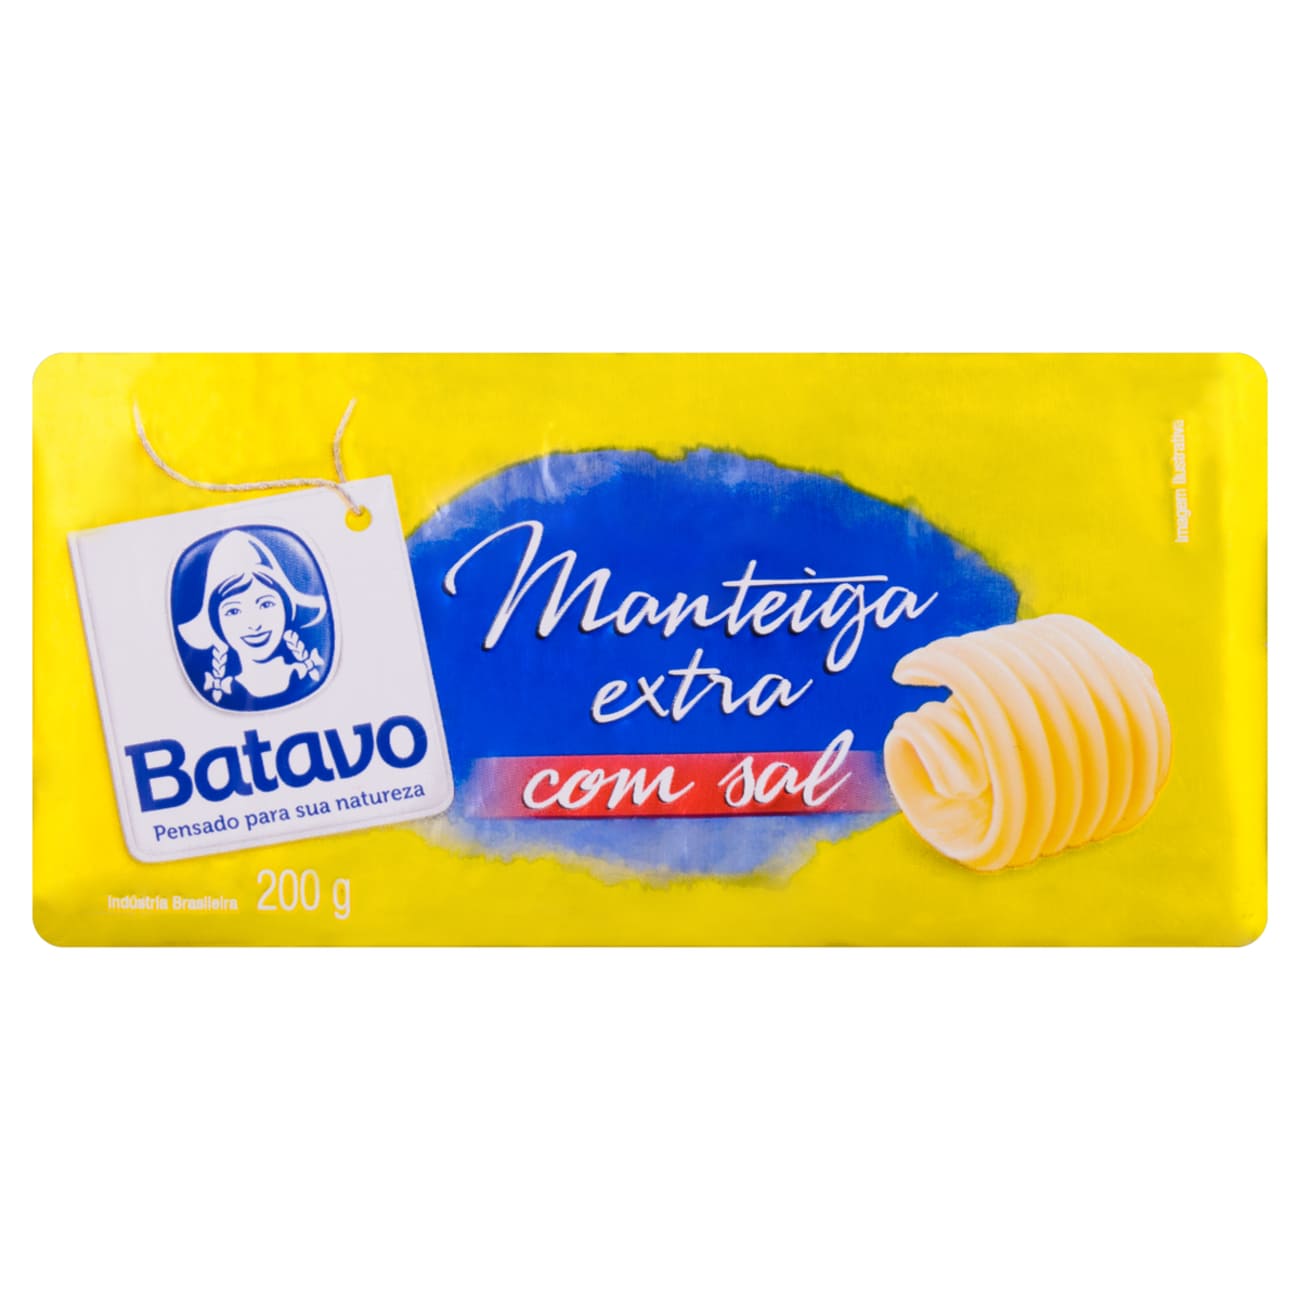 Manteiga Extra com Sal Batavo 200g